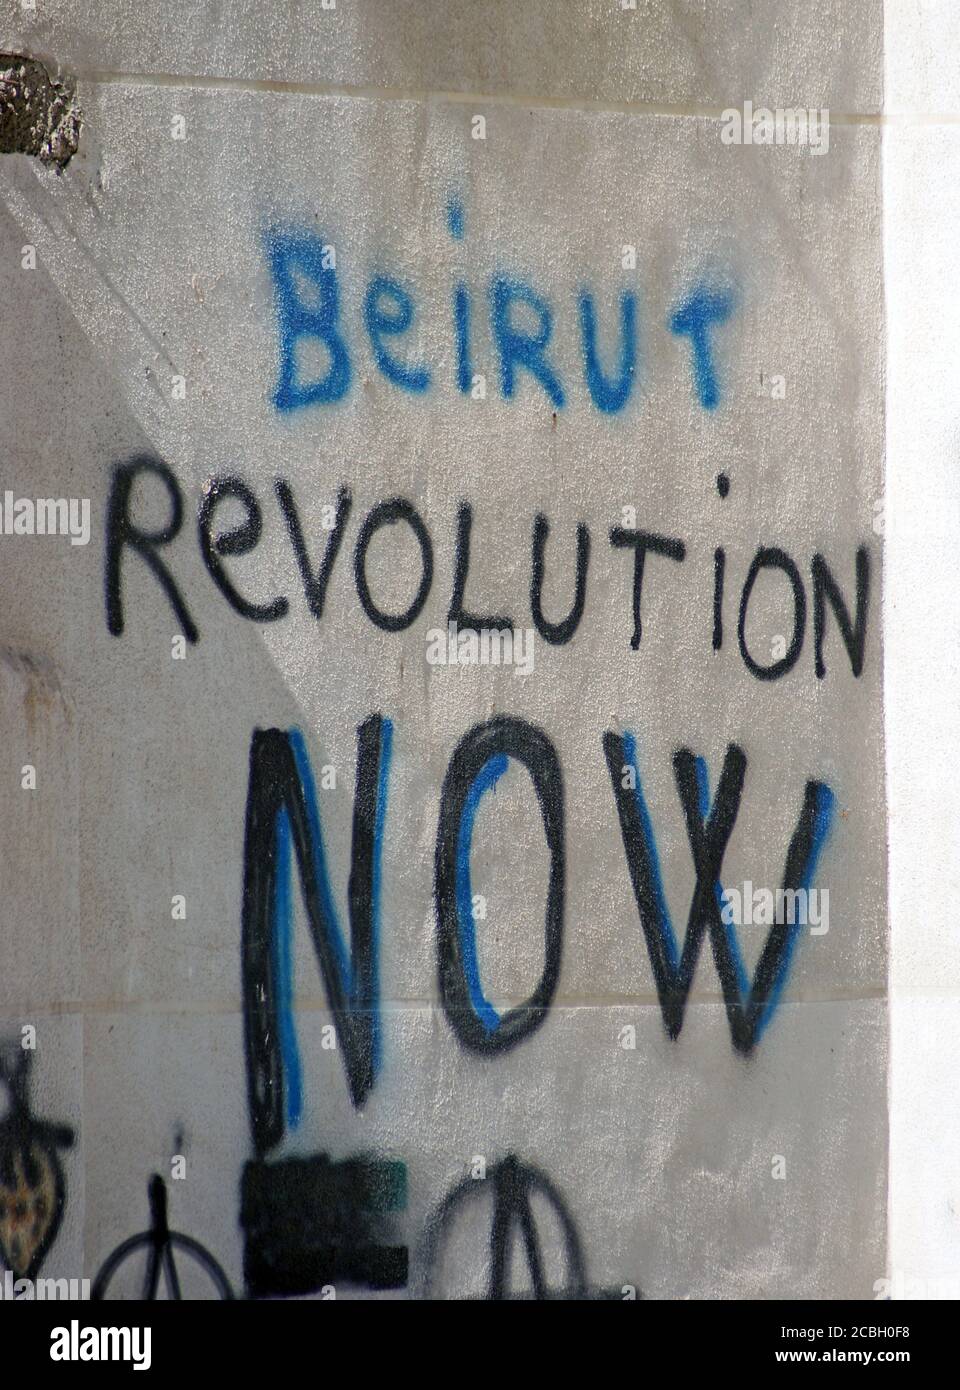 Graffiti an einer Wand in Beirut gibt der libanesische Staat "Beirut Revolution Now" aus dem Jahr 2012 Einblick in die anhaltenden Schwierigkeiten, die das Land im Laufe der Jahre politisch, wirtschaftlich und sozial hatte. Stockfoto